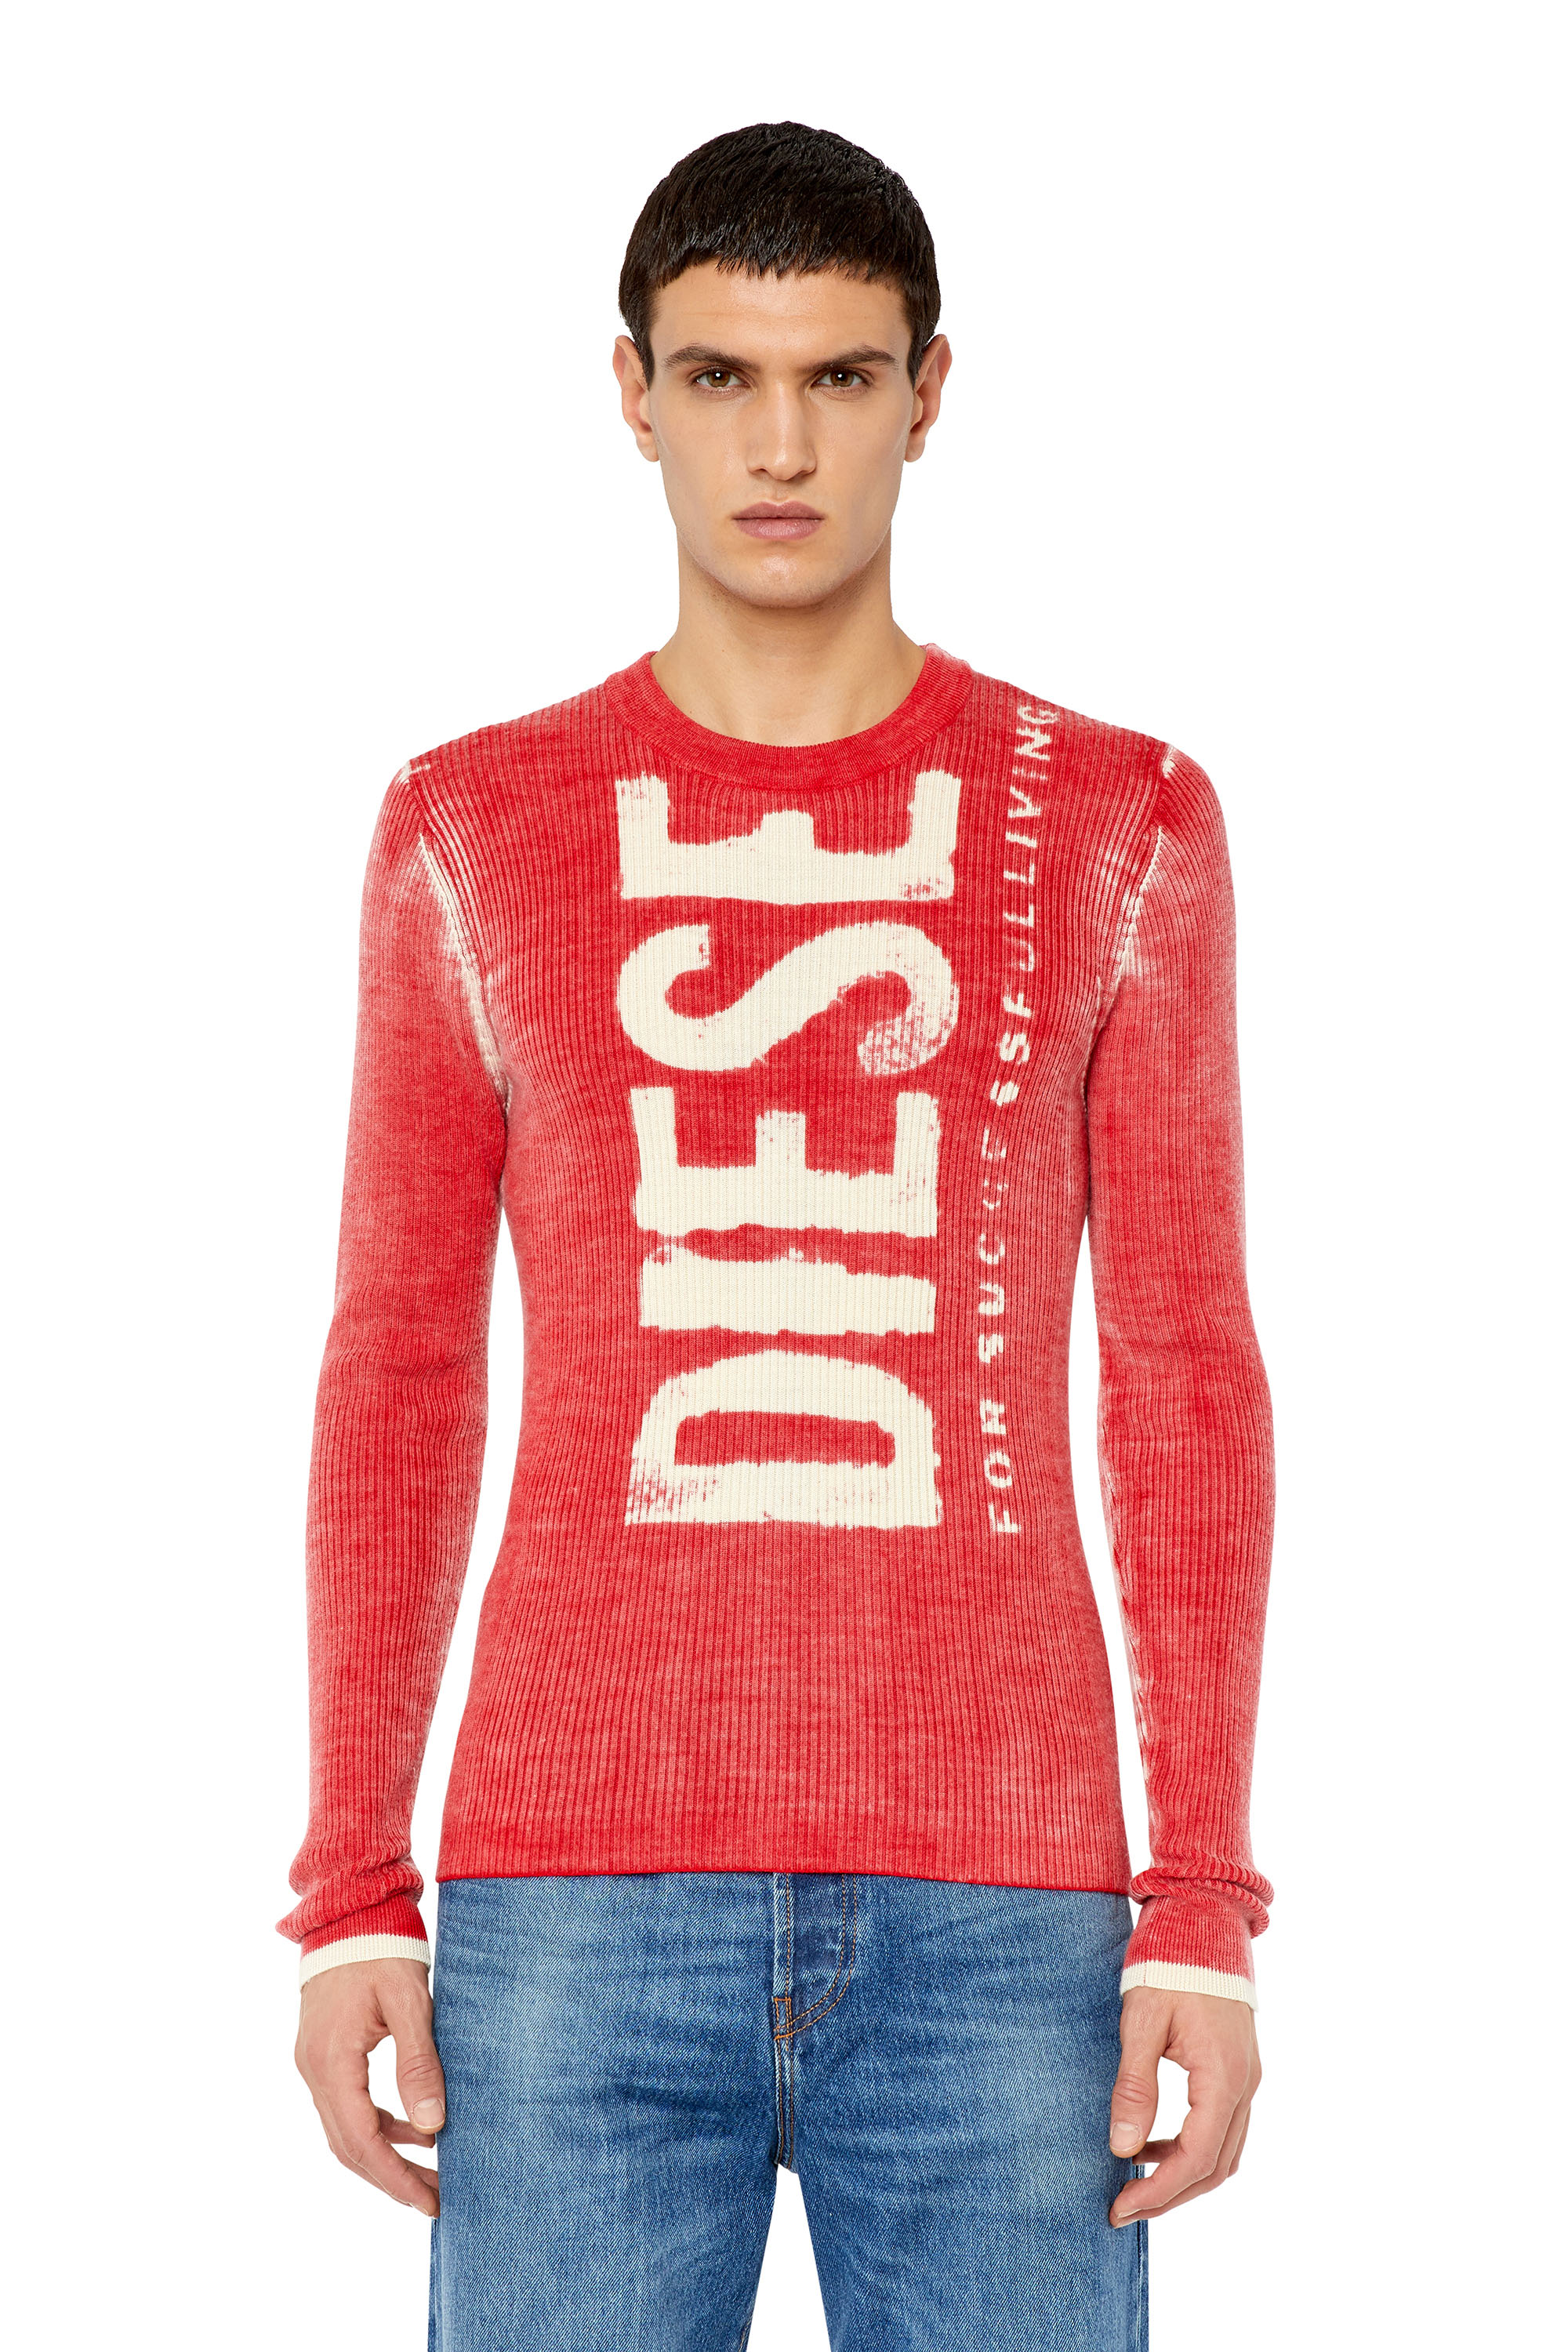 Diesel - Pullover aus Wolle mit ausgewaschenem Logo - Strickwaren - Herren - Rot